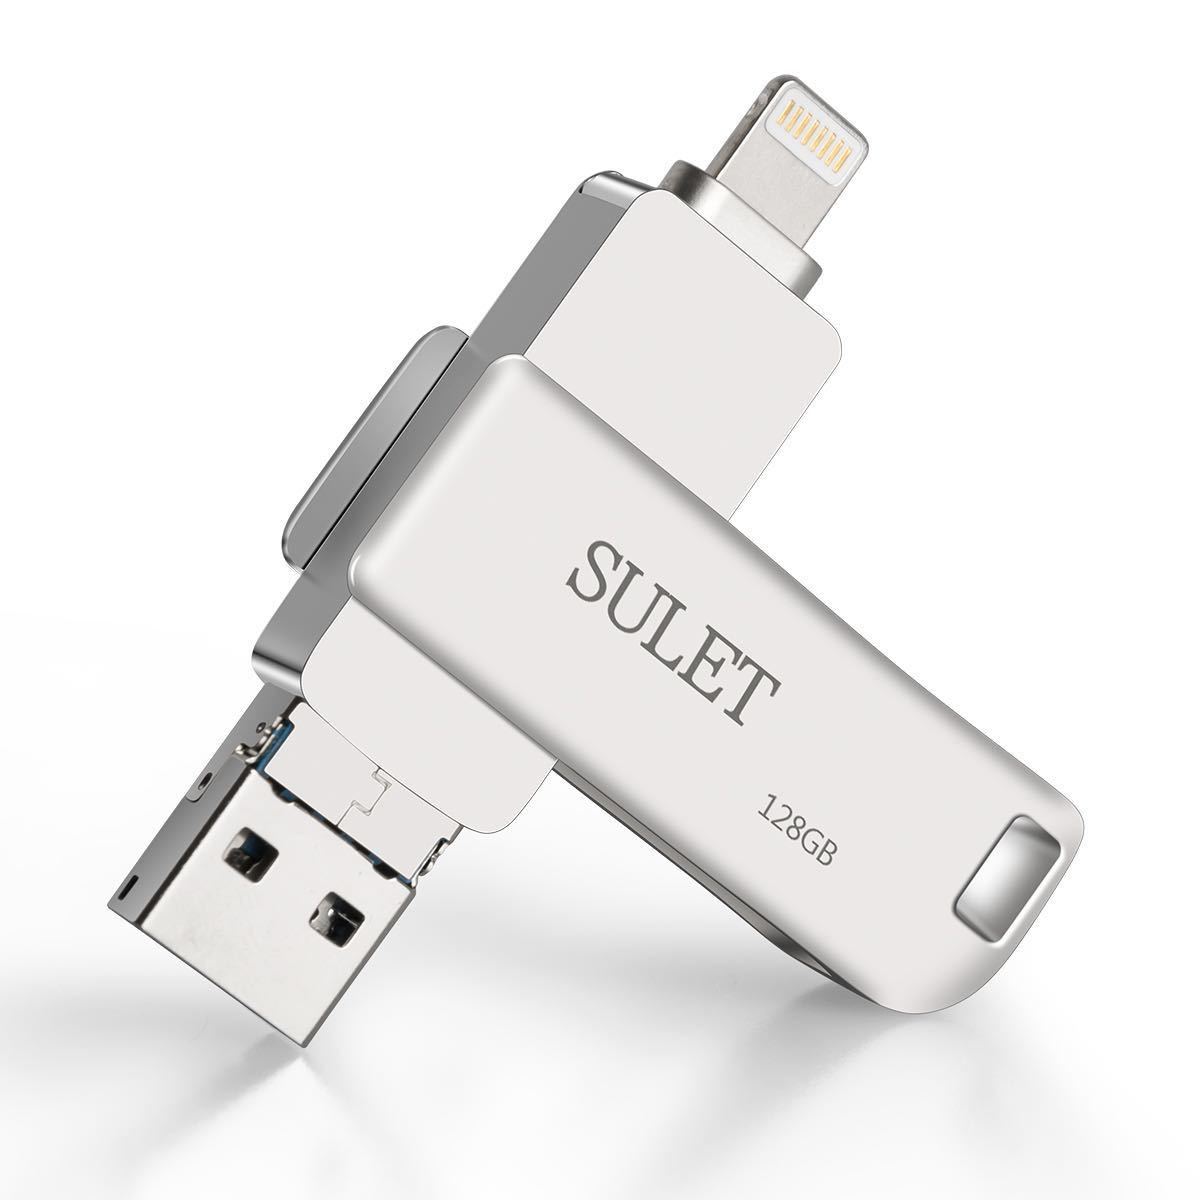 USB память 128GB iPhone flash Drive поворотный 3in1 цинк сплав ( серебряный ) покупка приветствуется 